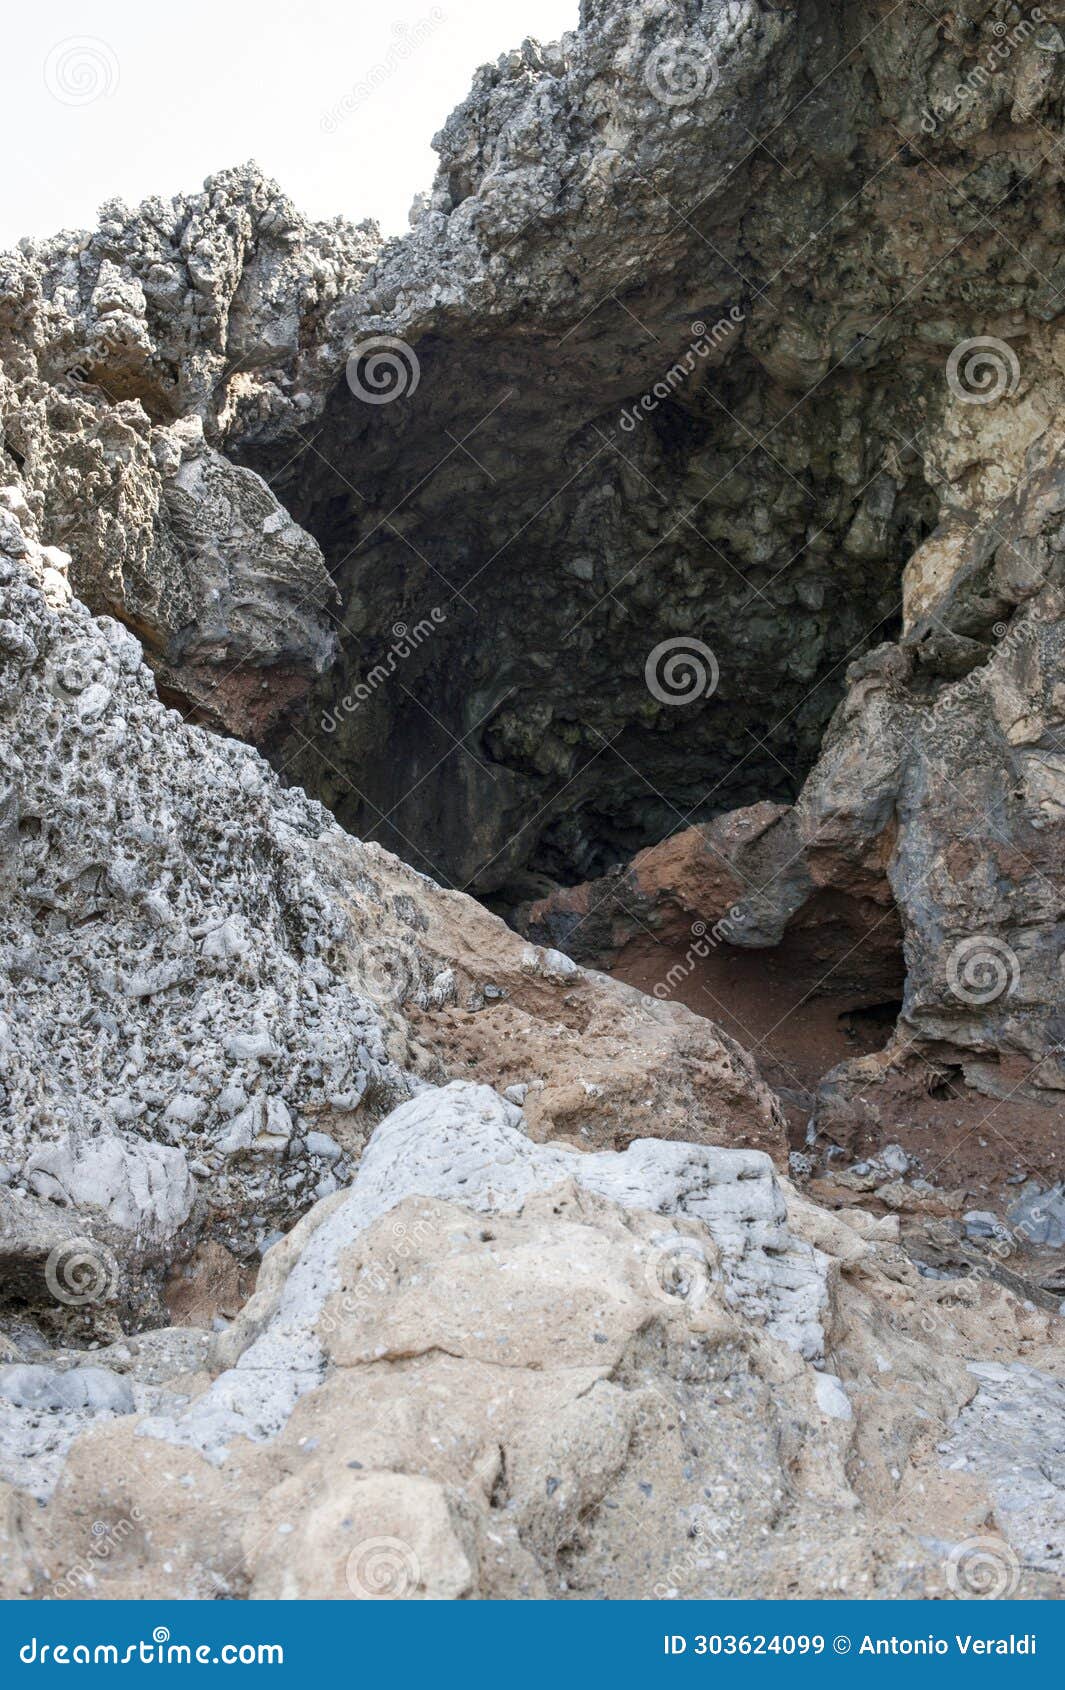 a calcareous cave on the beach.